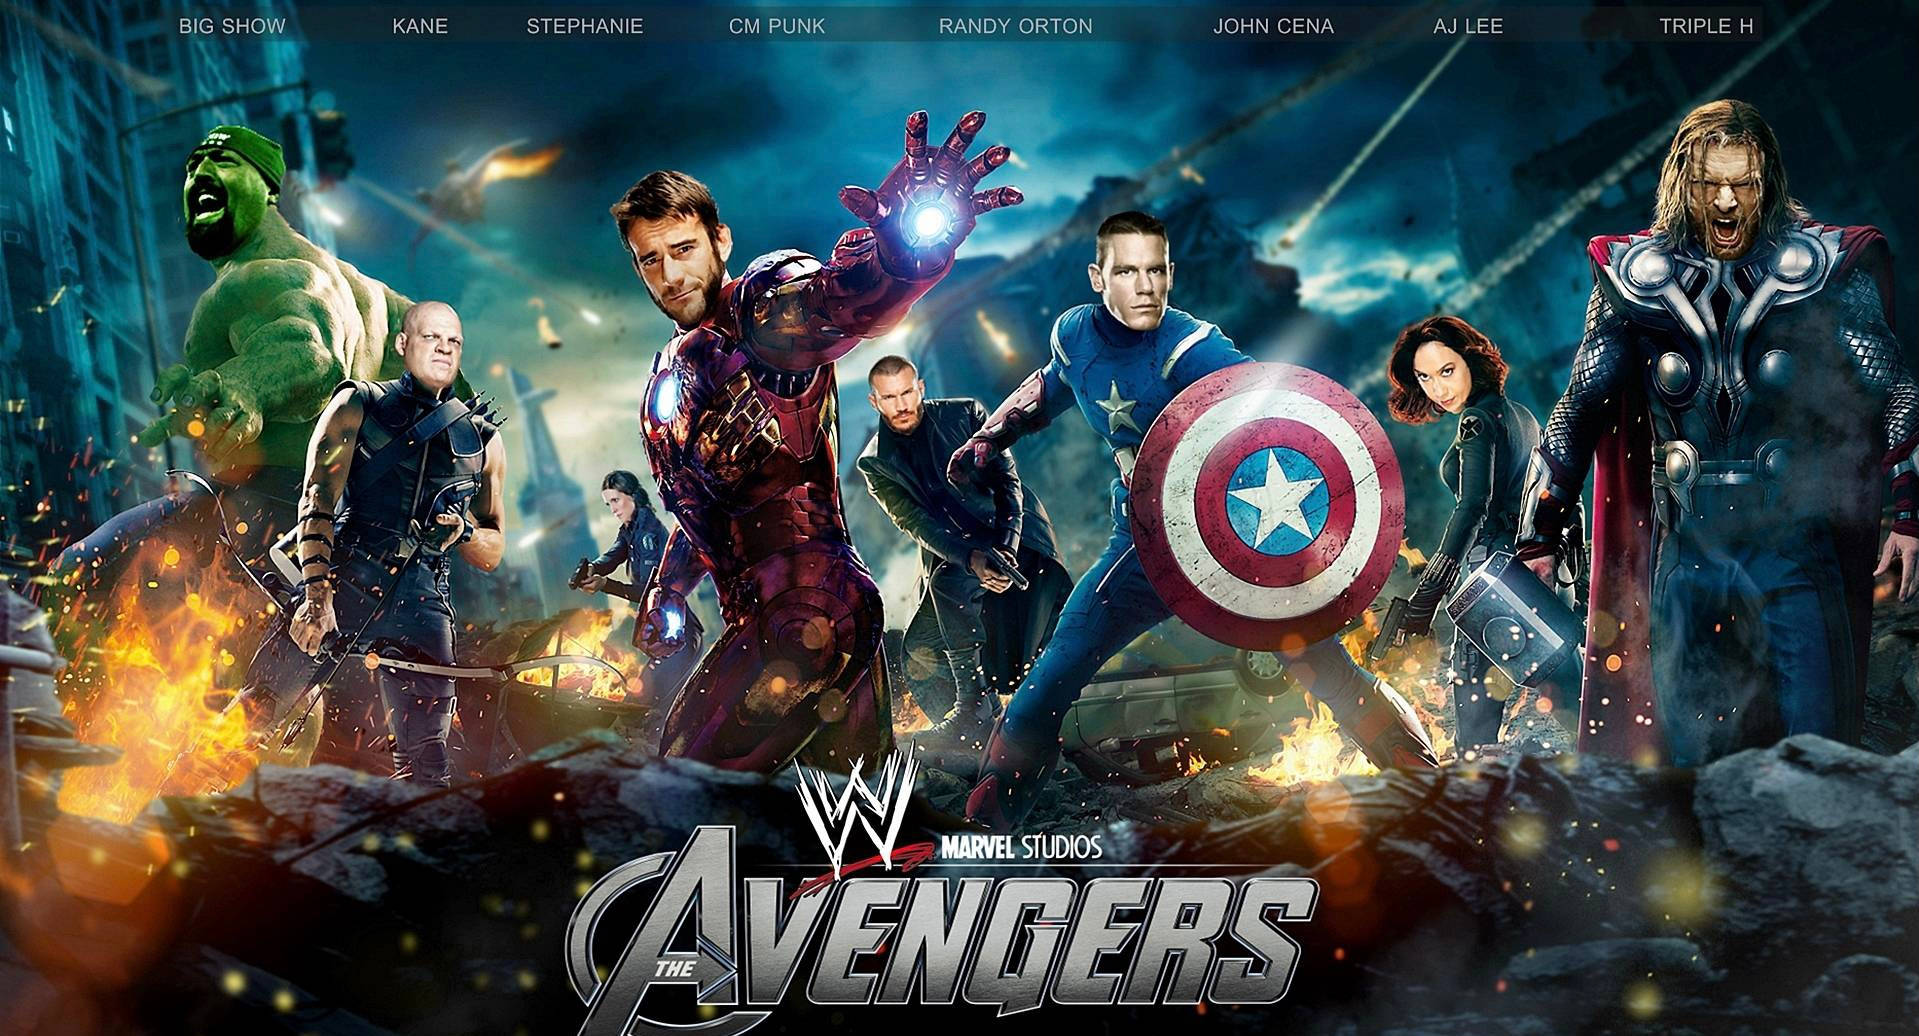 Wwe Wrestlers As Avengers